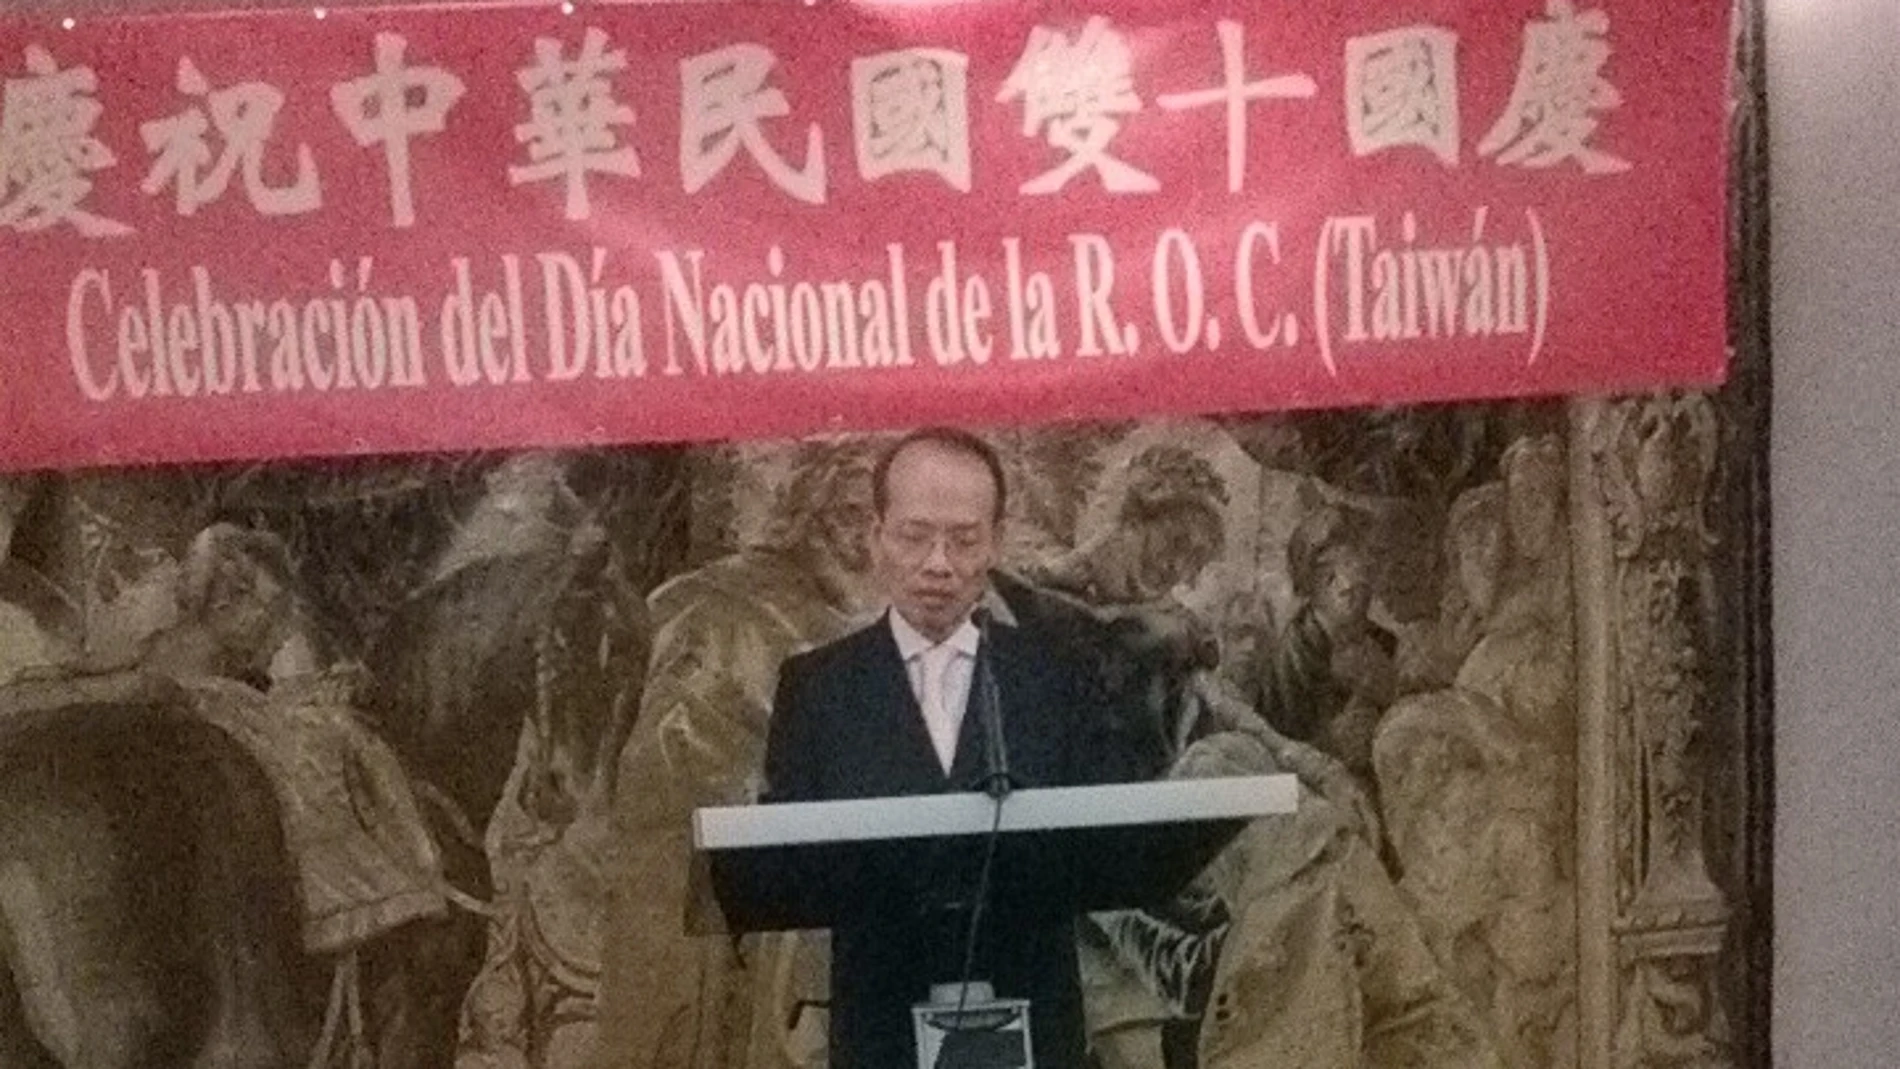 Instante en el que representante de Taiwán en España, don Javier Ching-shan Hou, pronuncia su discurso.